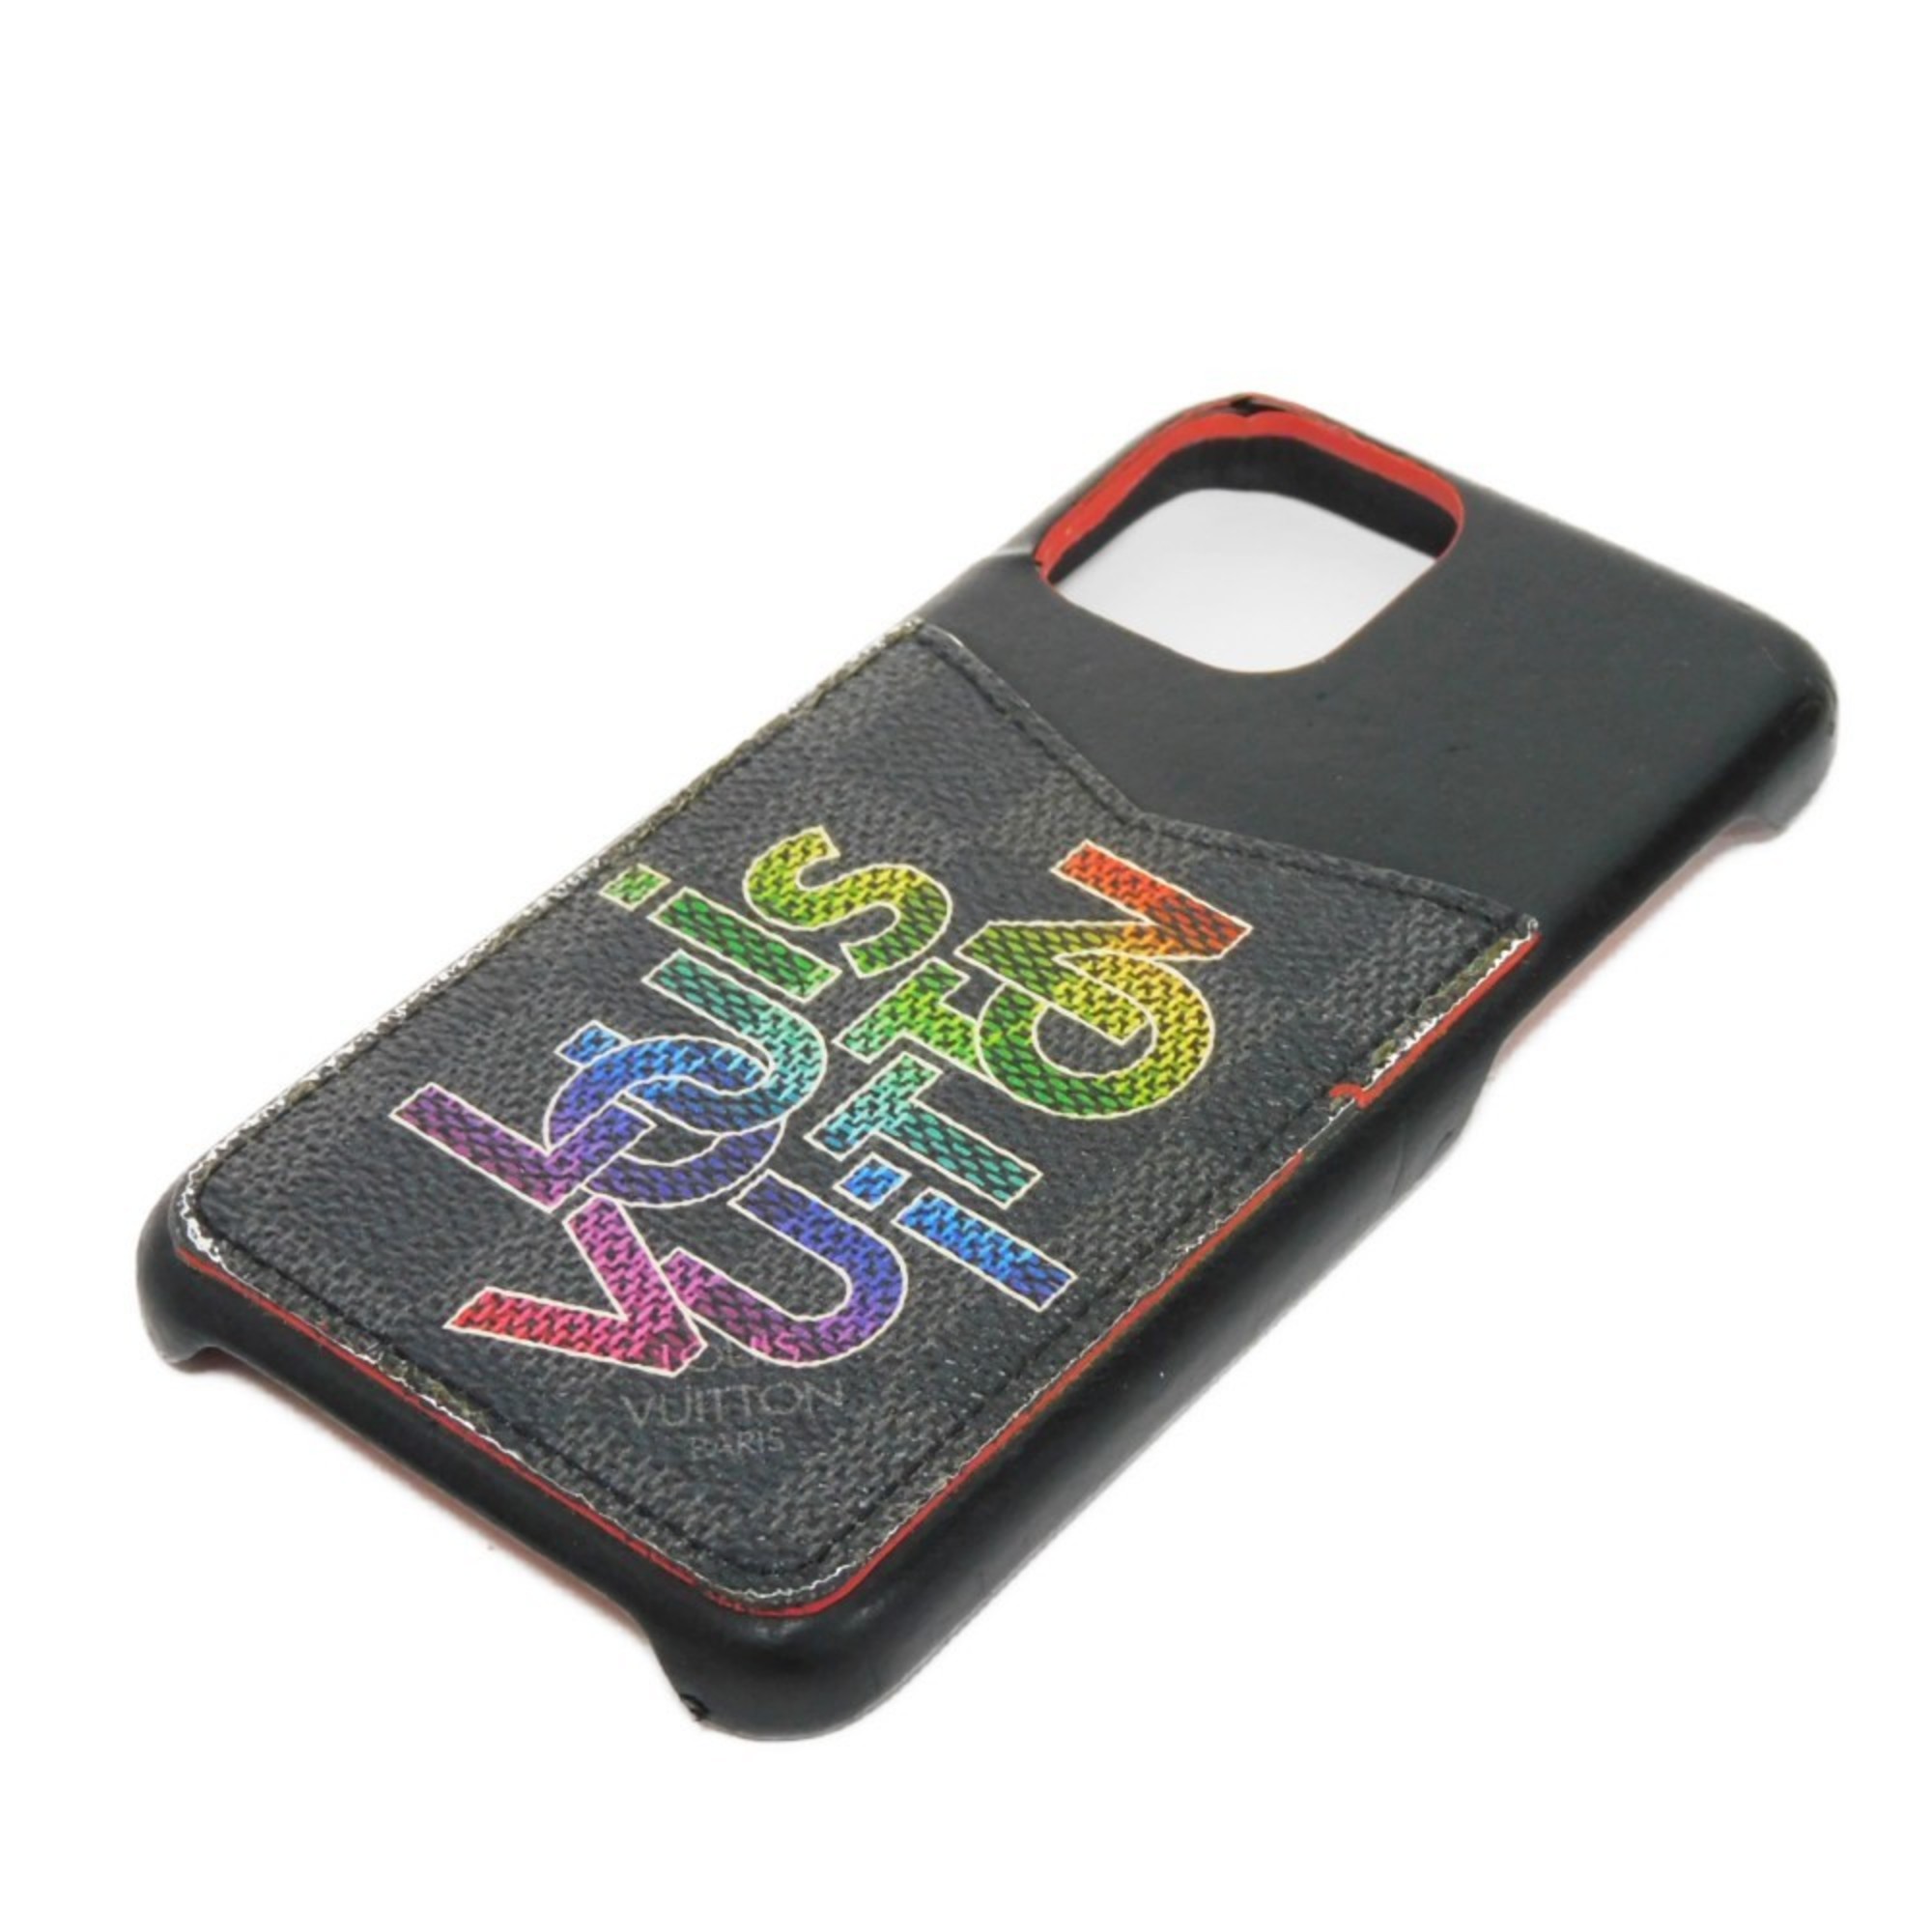 LOUIS VUITTON Smartphone Case iPhone Bumper 11 PRO Virgil Abloh Multicolor Damier Graphite Rainbow iPhone11Pro M69429 Men's